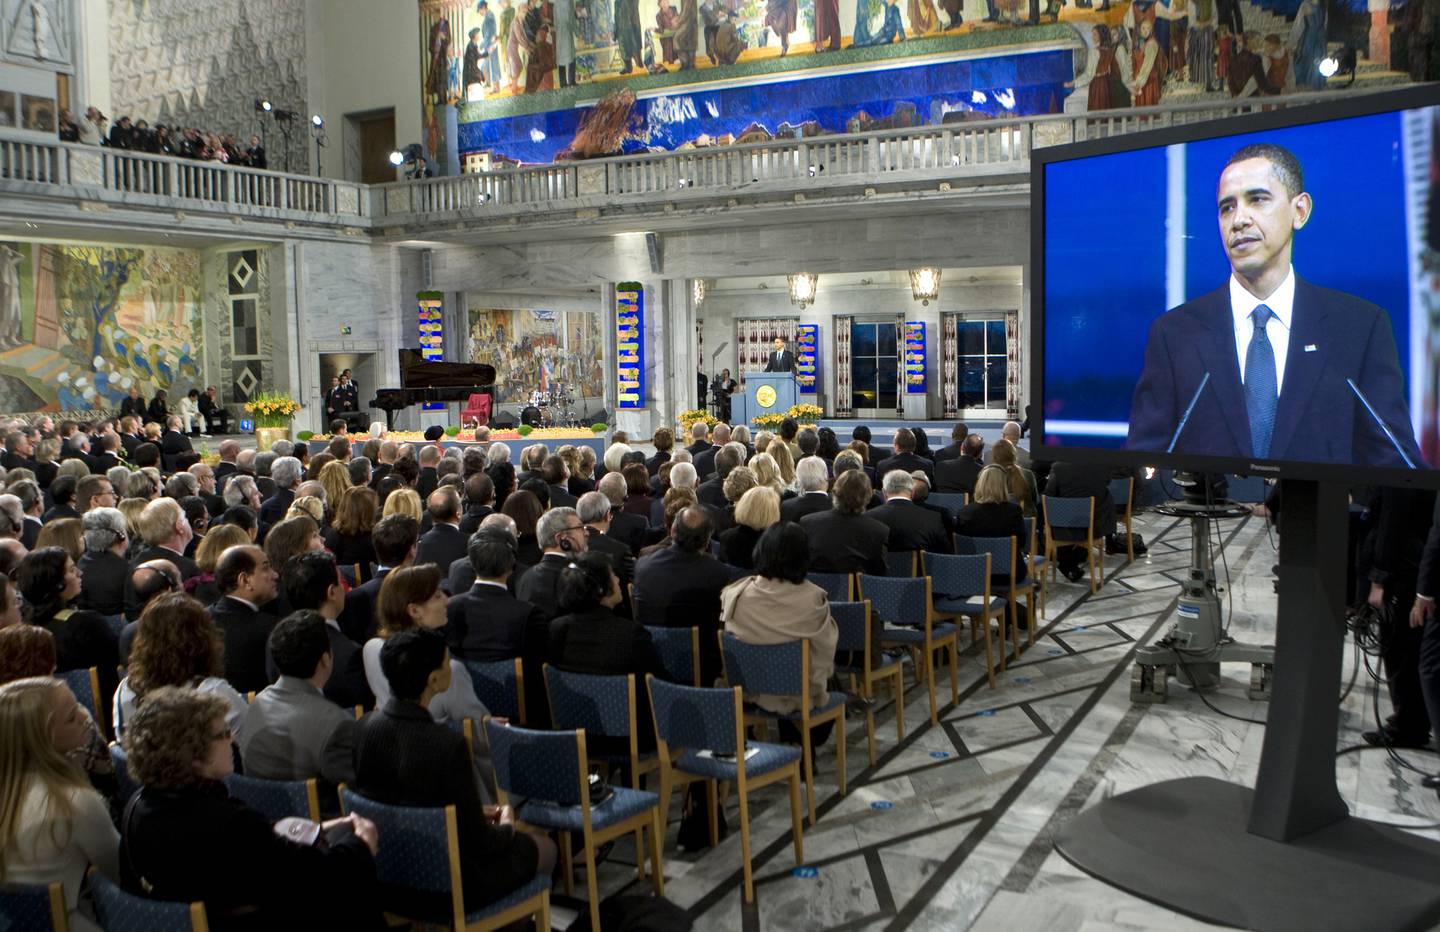 OSLO  20091210.
Fredsprisvinner President Barack Obama mottar Nobels fredspris 2009  i Oslo Rådhus torsdag.
Foto: Bjørn Sigurdsøn / NTB POOL